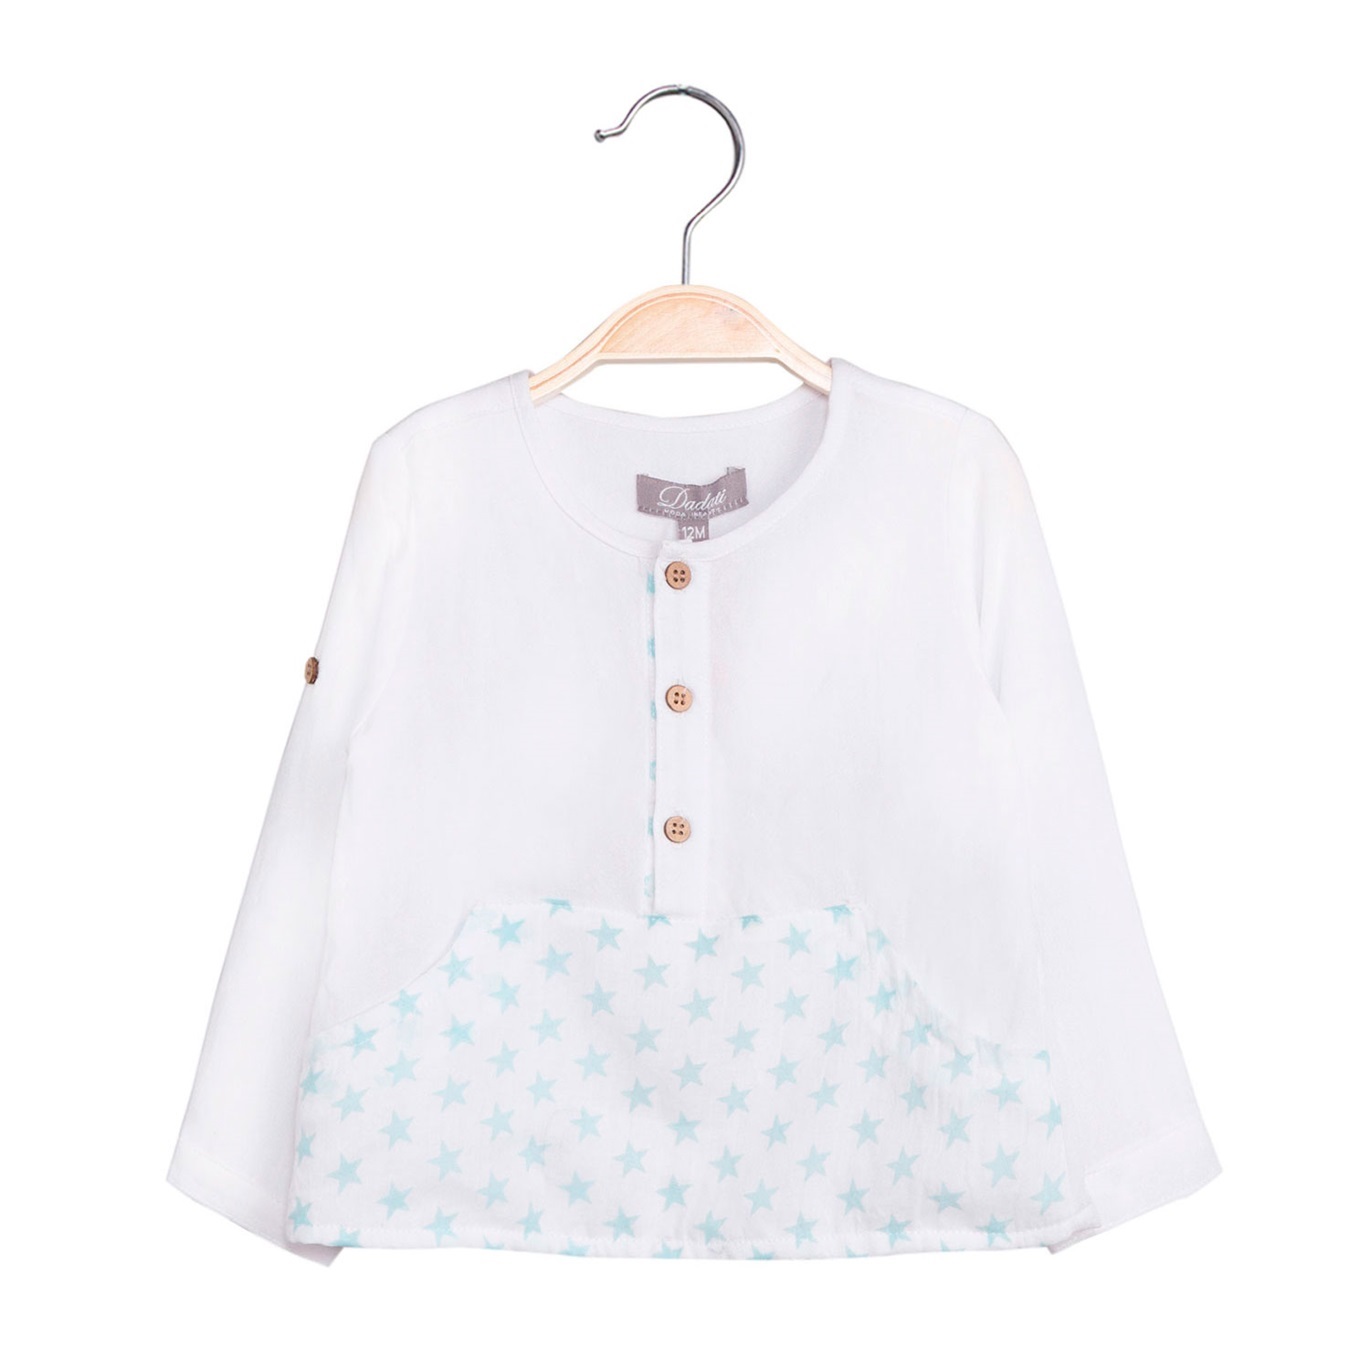 Imagen de Camisa de bebé niño con print estrellas y manga larga